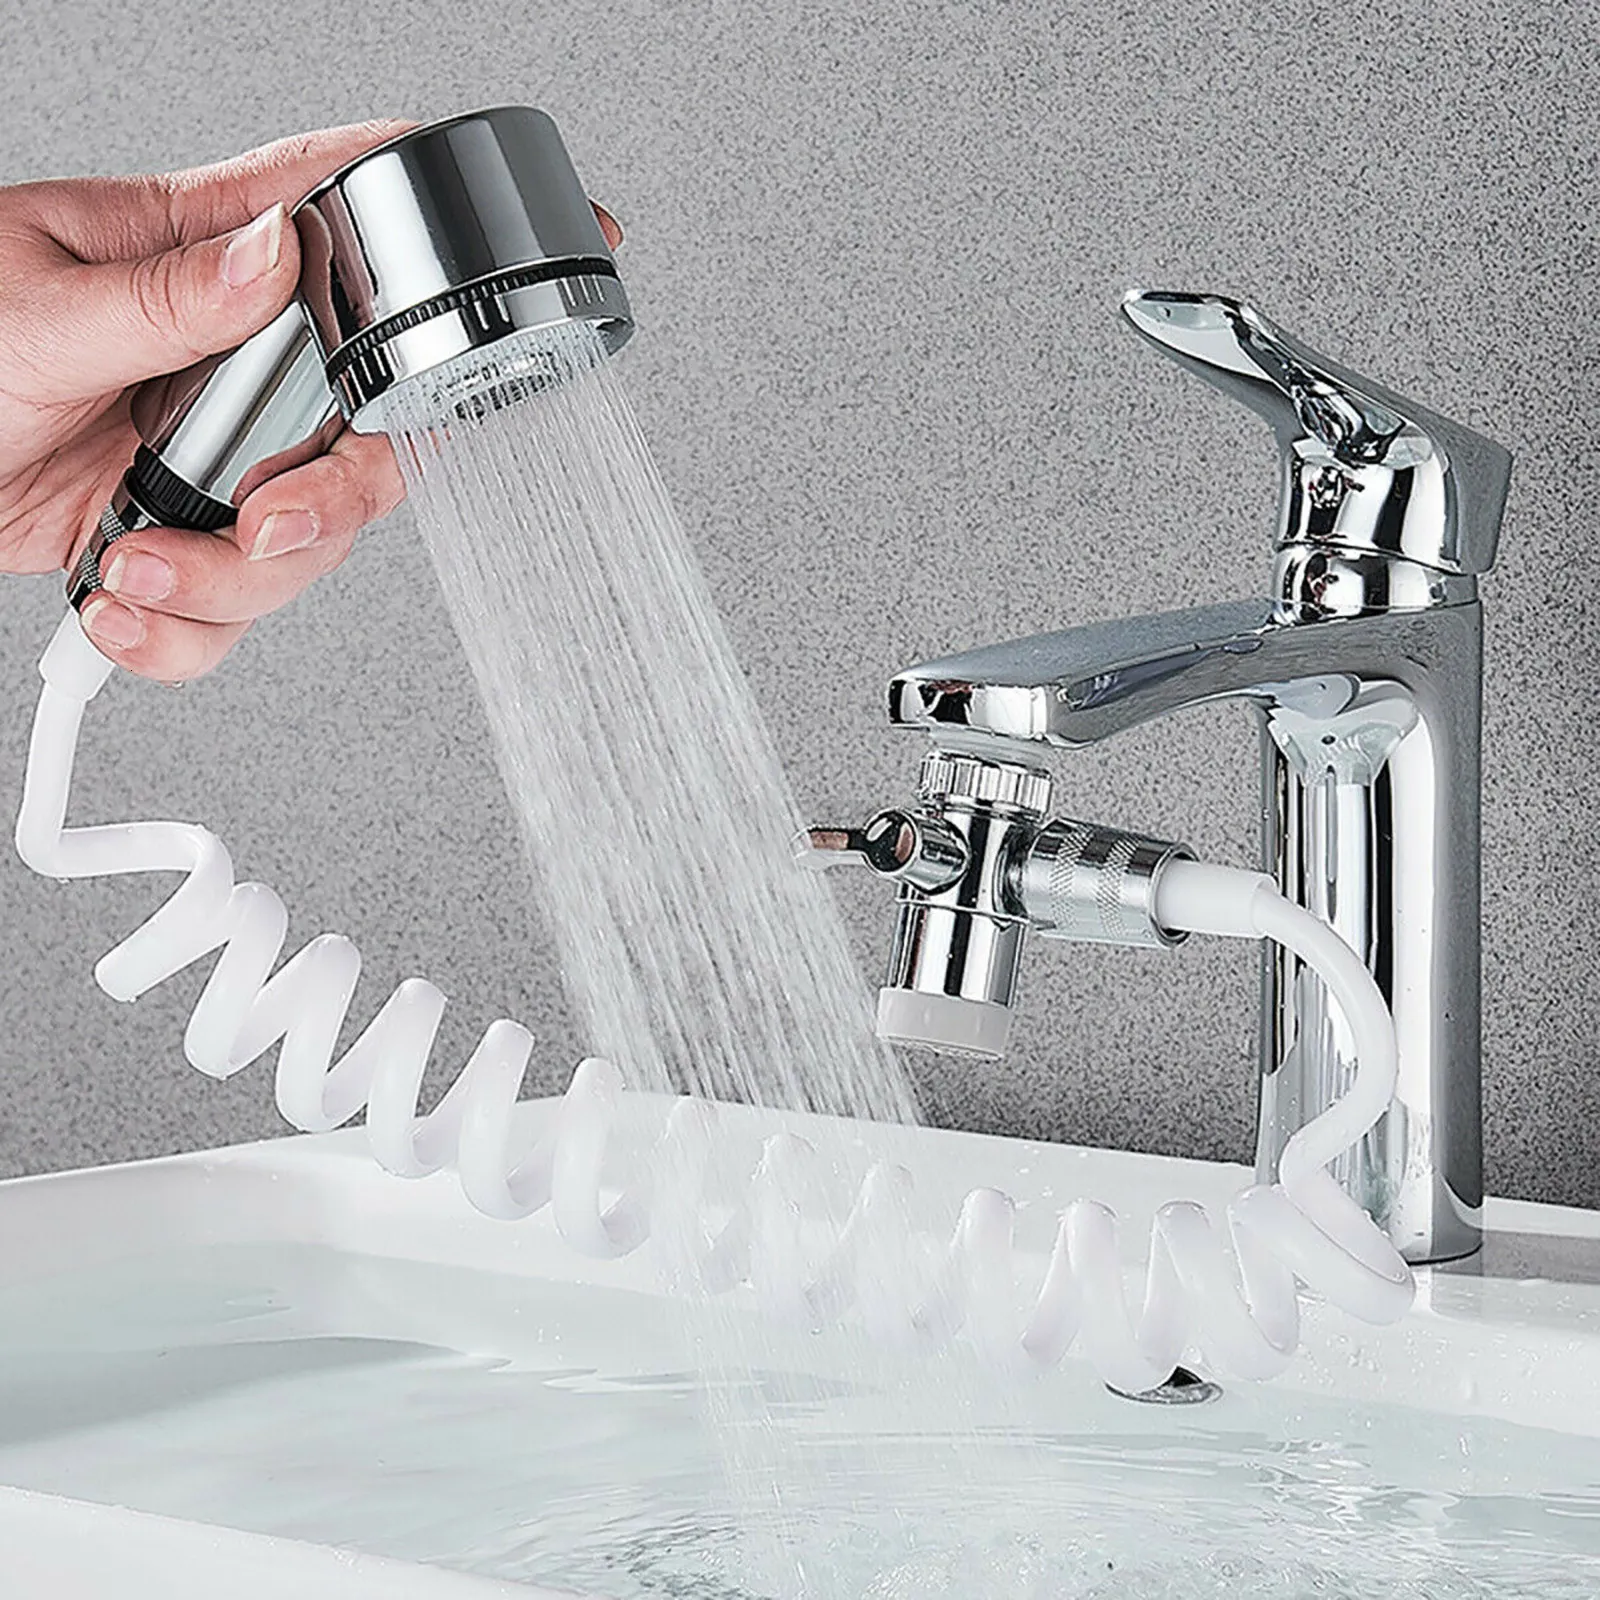 Смесители раковины для ванной комнаты домашний смеситель для распылителя вода для насадки регулируемые душевые набор присосания на стенах